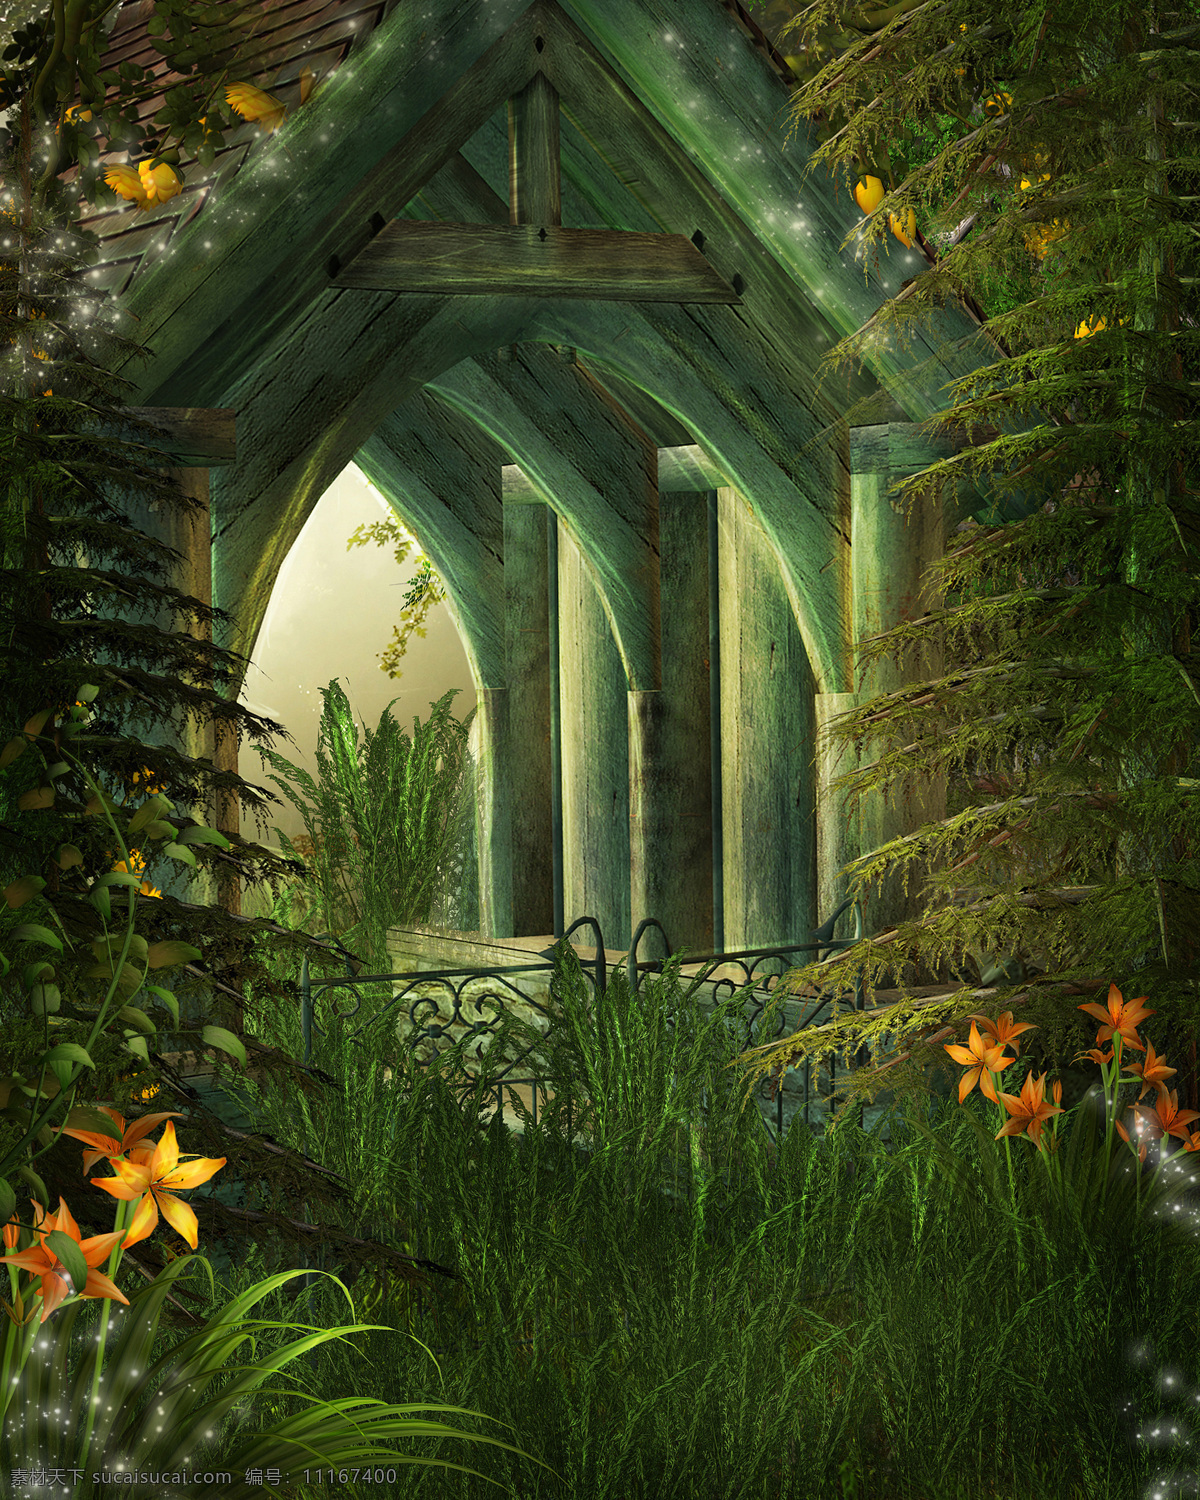 梦幻 自然 童话 唯美 大自然 森林 草地 朦胧 鲜花 窗户 窗外 小木屋 山水风景 风景图片